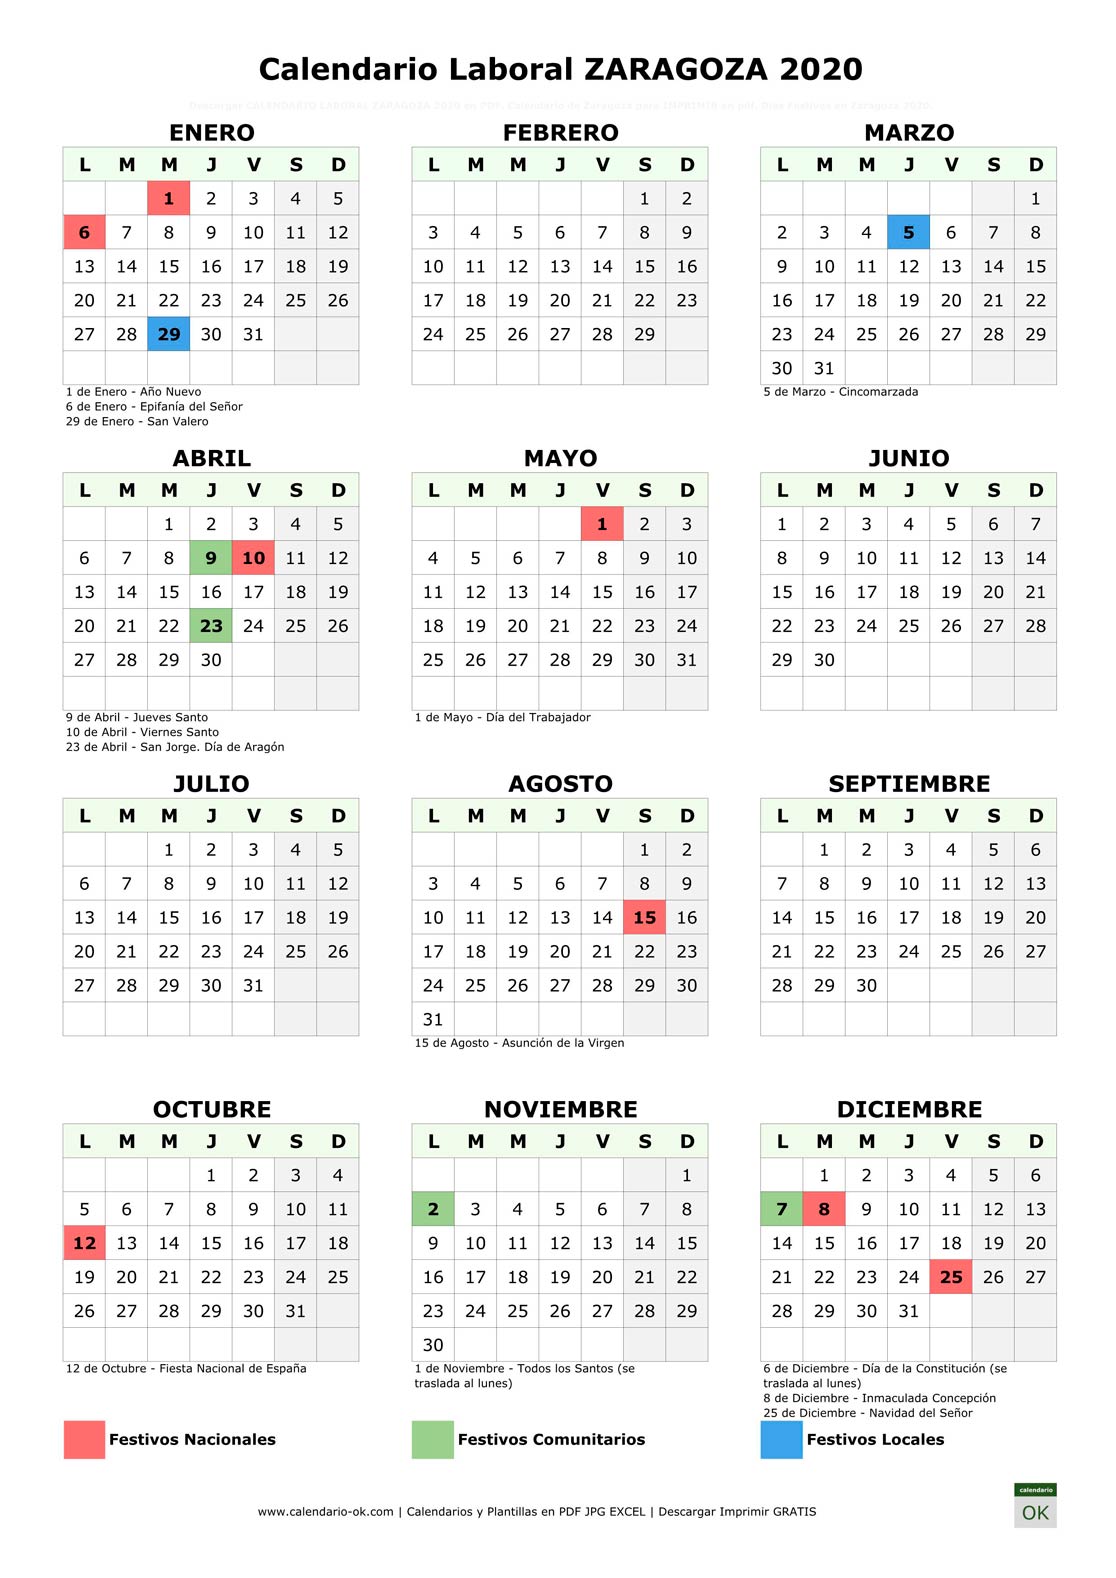 Calendario Laboral ZARAGOZA 2020